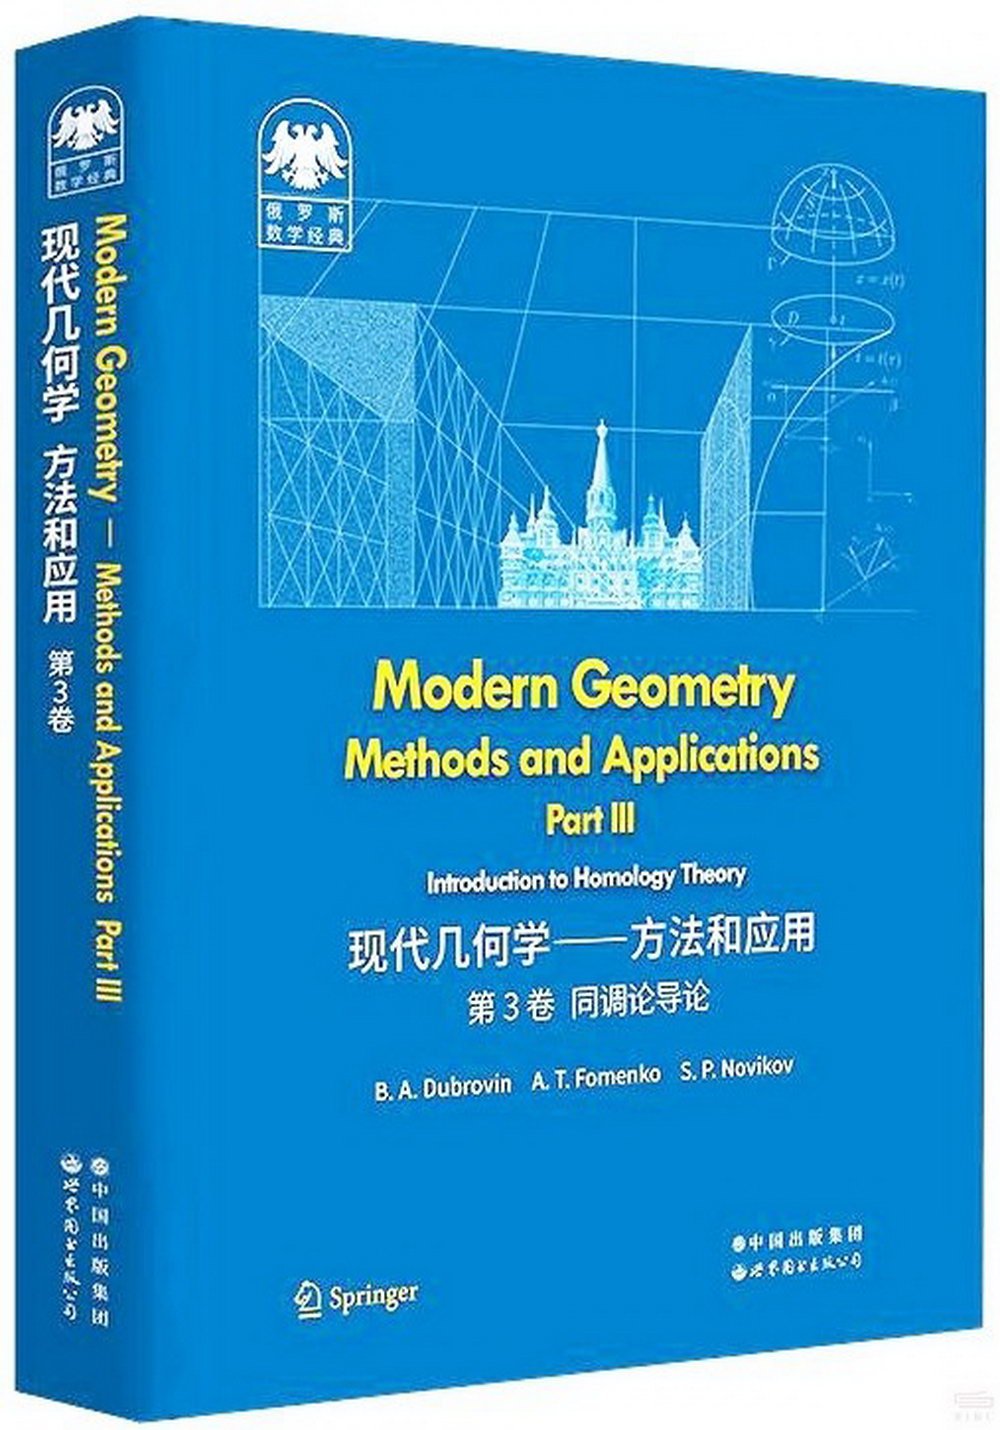 現代幾何學--方法和應用(第3卷同調論導論)